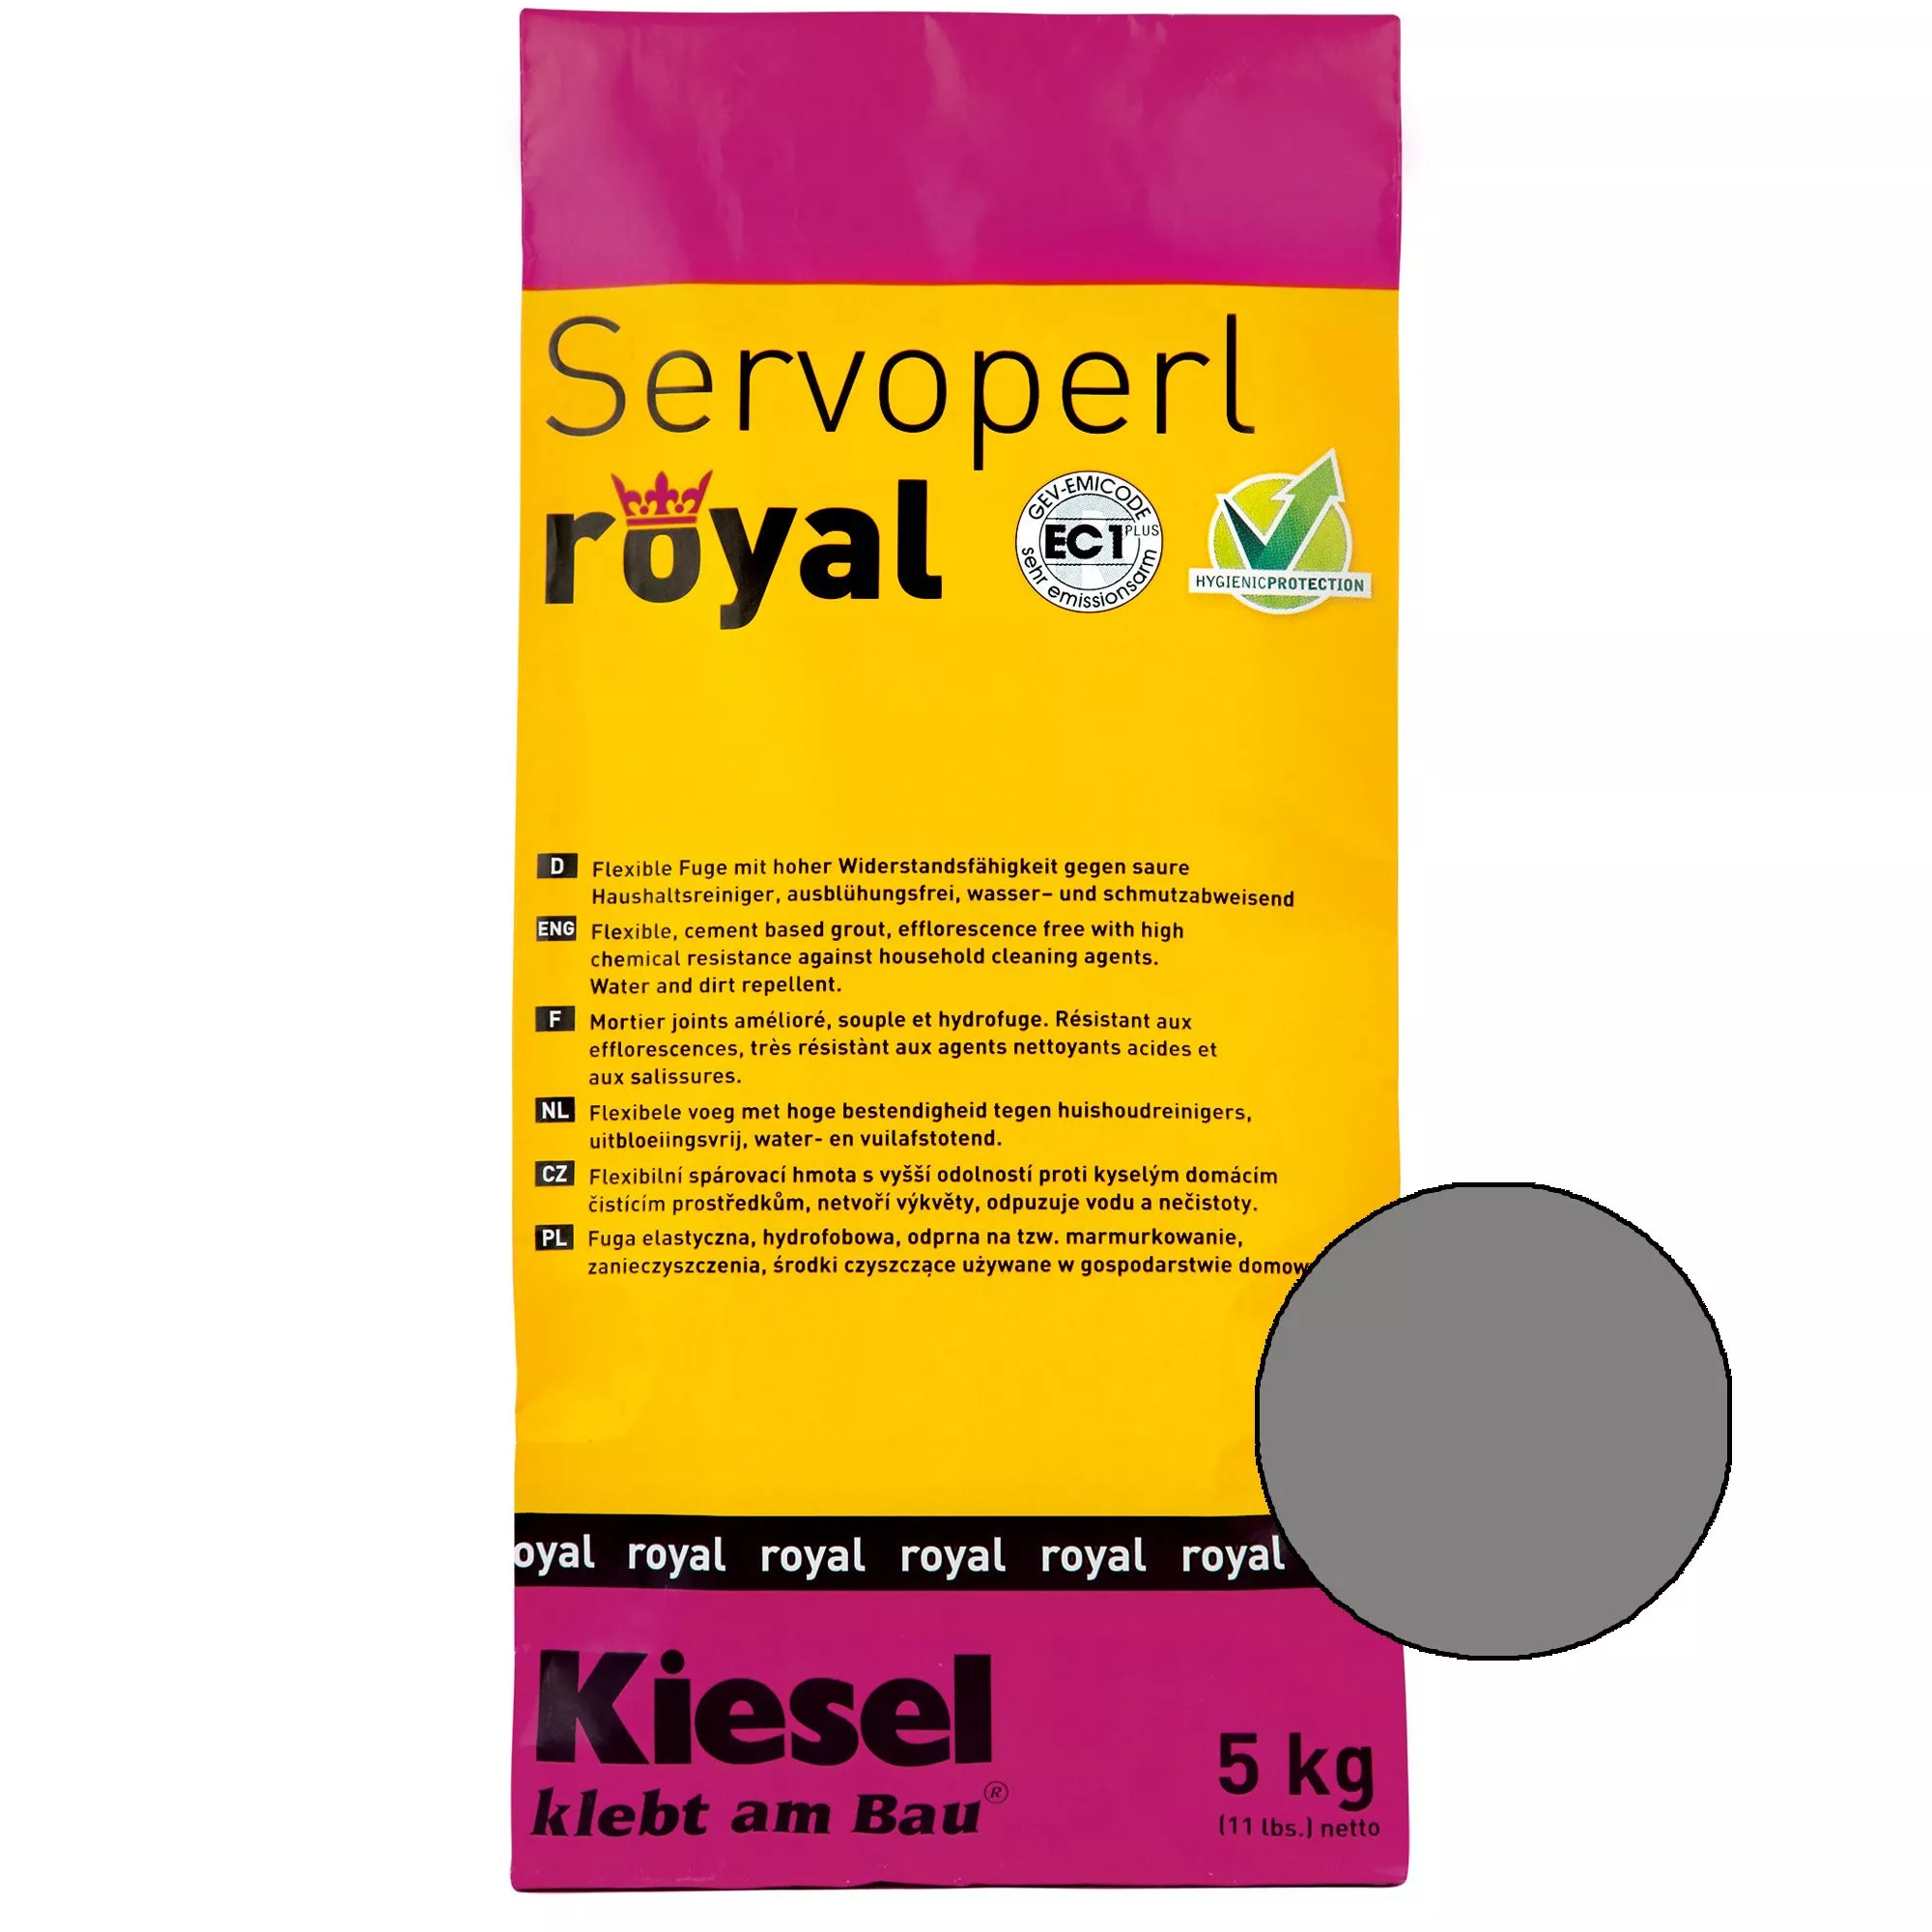 Kiesel Servoperl royal - Flexible, wasser- und schmutzabweisende Fuge (5KG Mittelgrau)